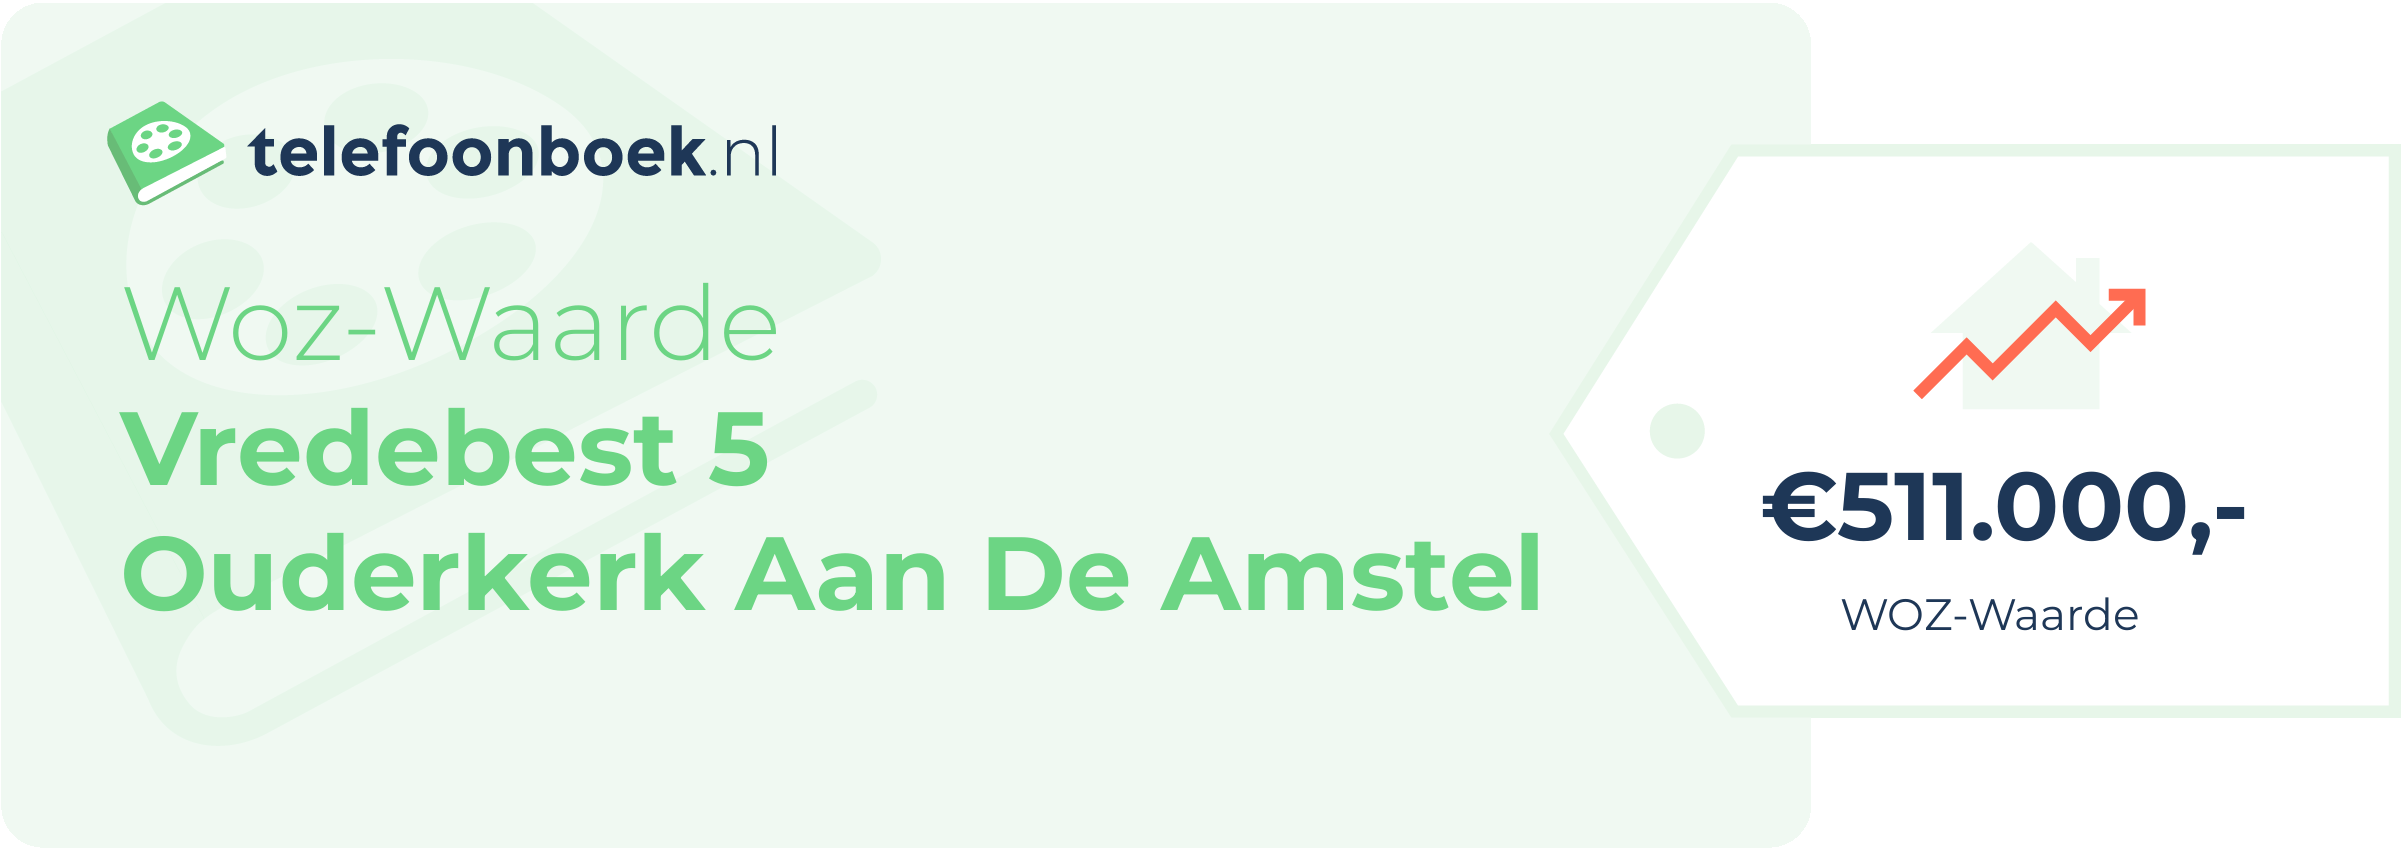 WOZ-waarde Vredebest 5 Ouderkerk Aan De Amstel